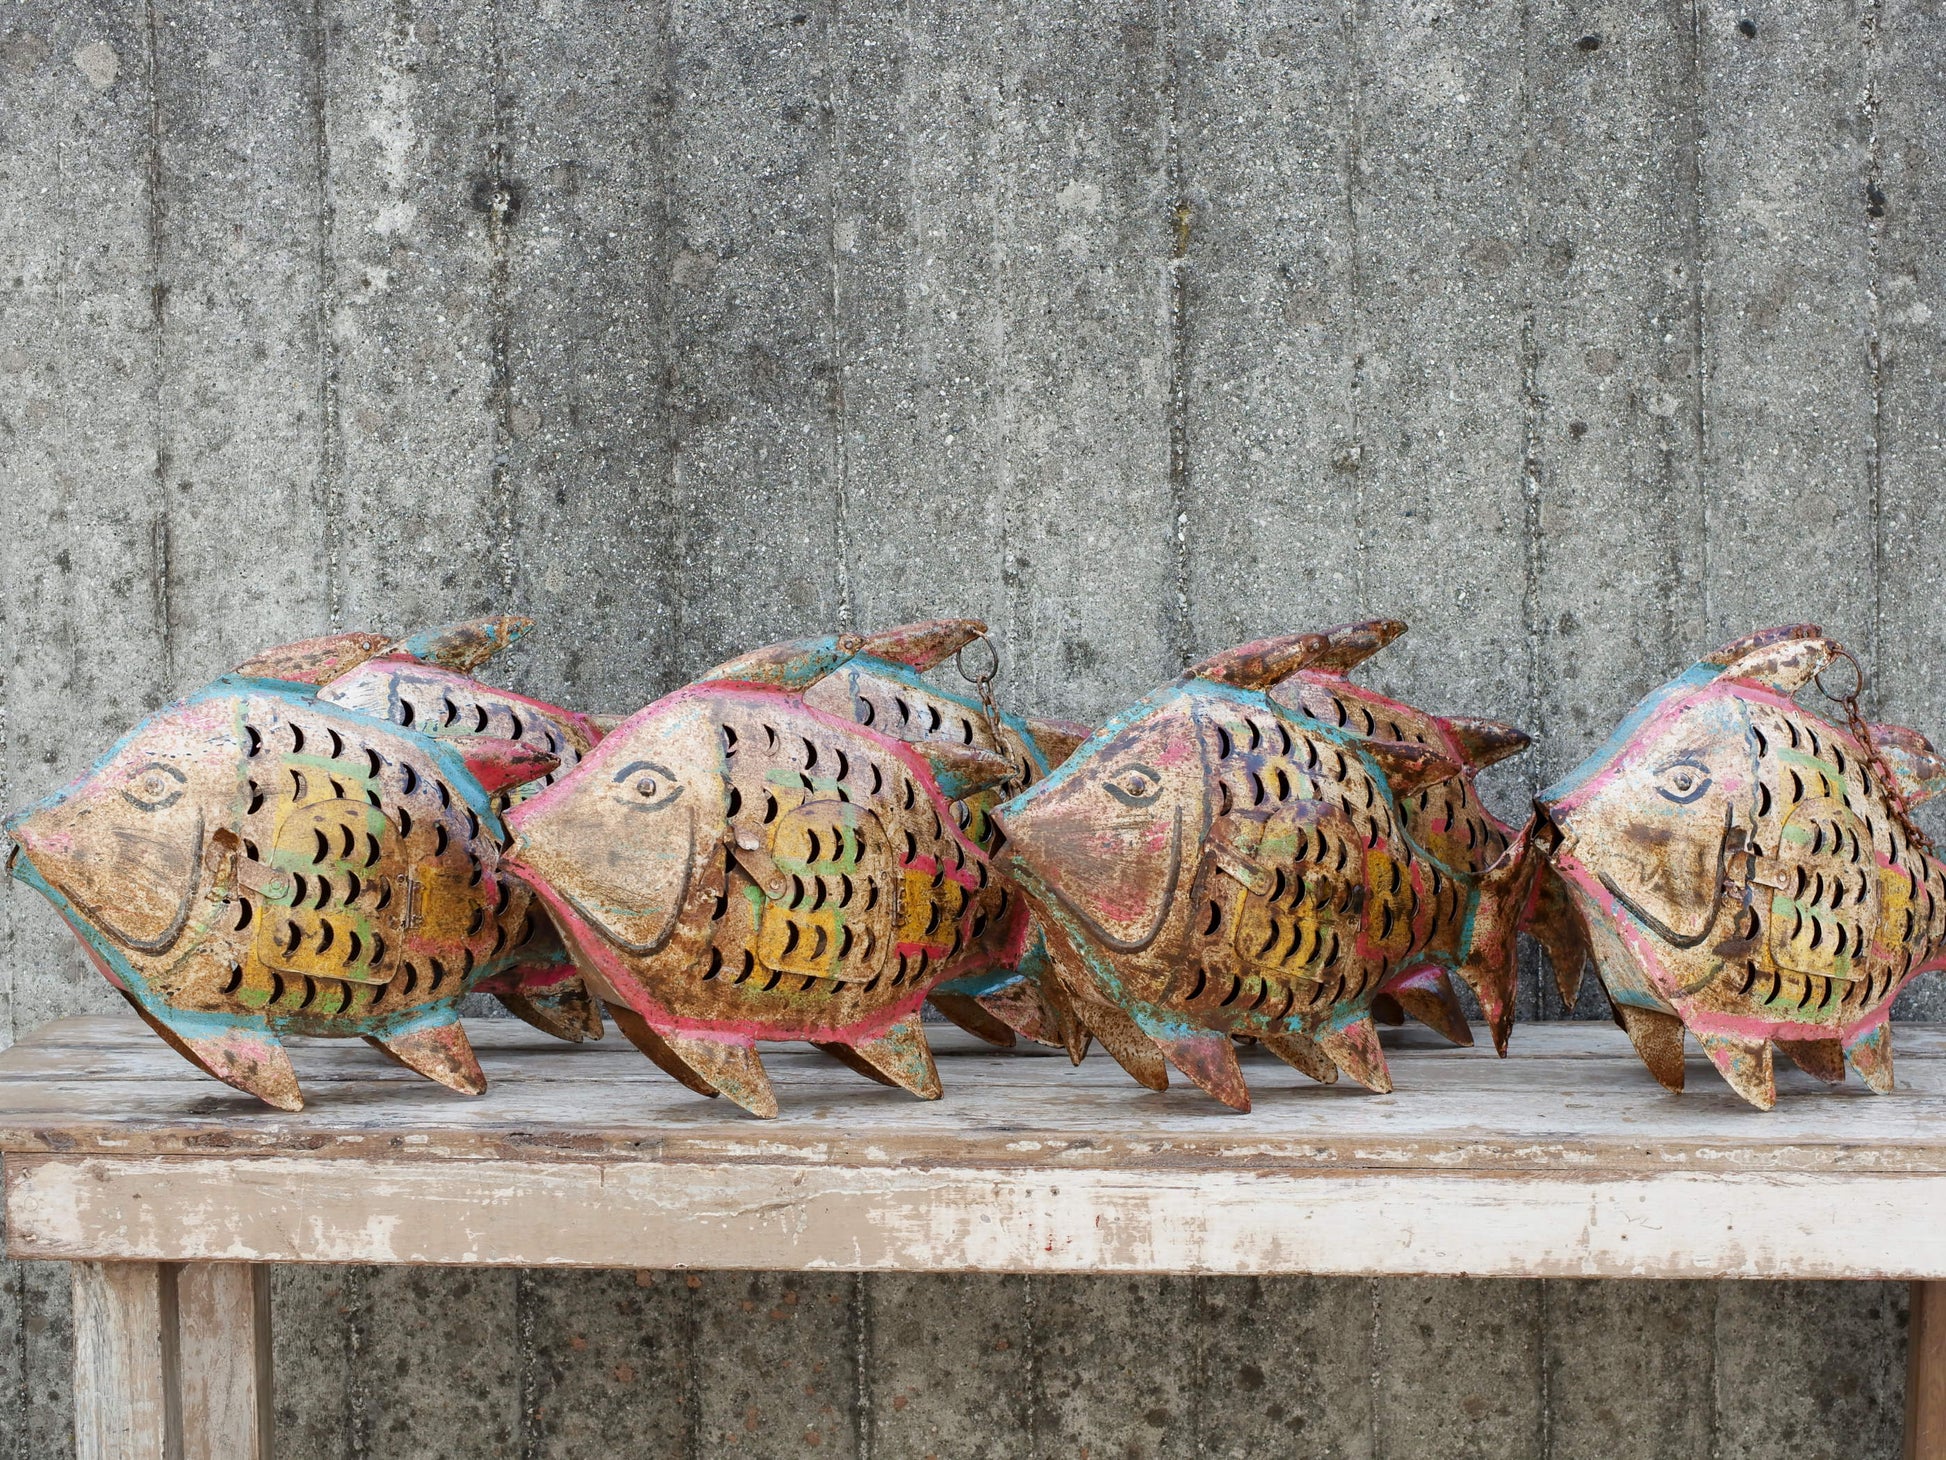 portacandele pesce in metallo dipinto, india, con catena per appendere. disponibili piu' pezzi in più colori come da foto.  dimensioni 46x10 h32cm lunghezza catena 26cm